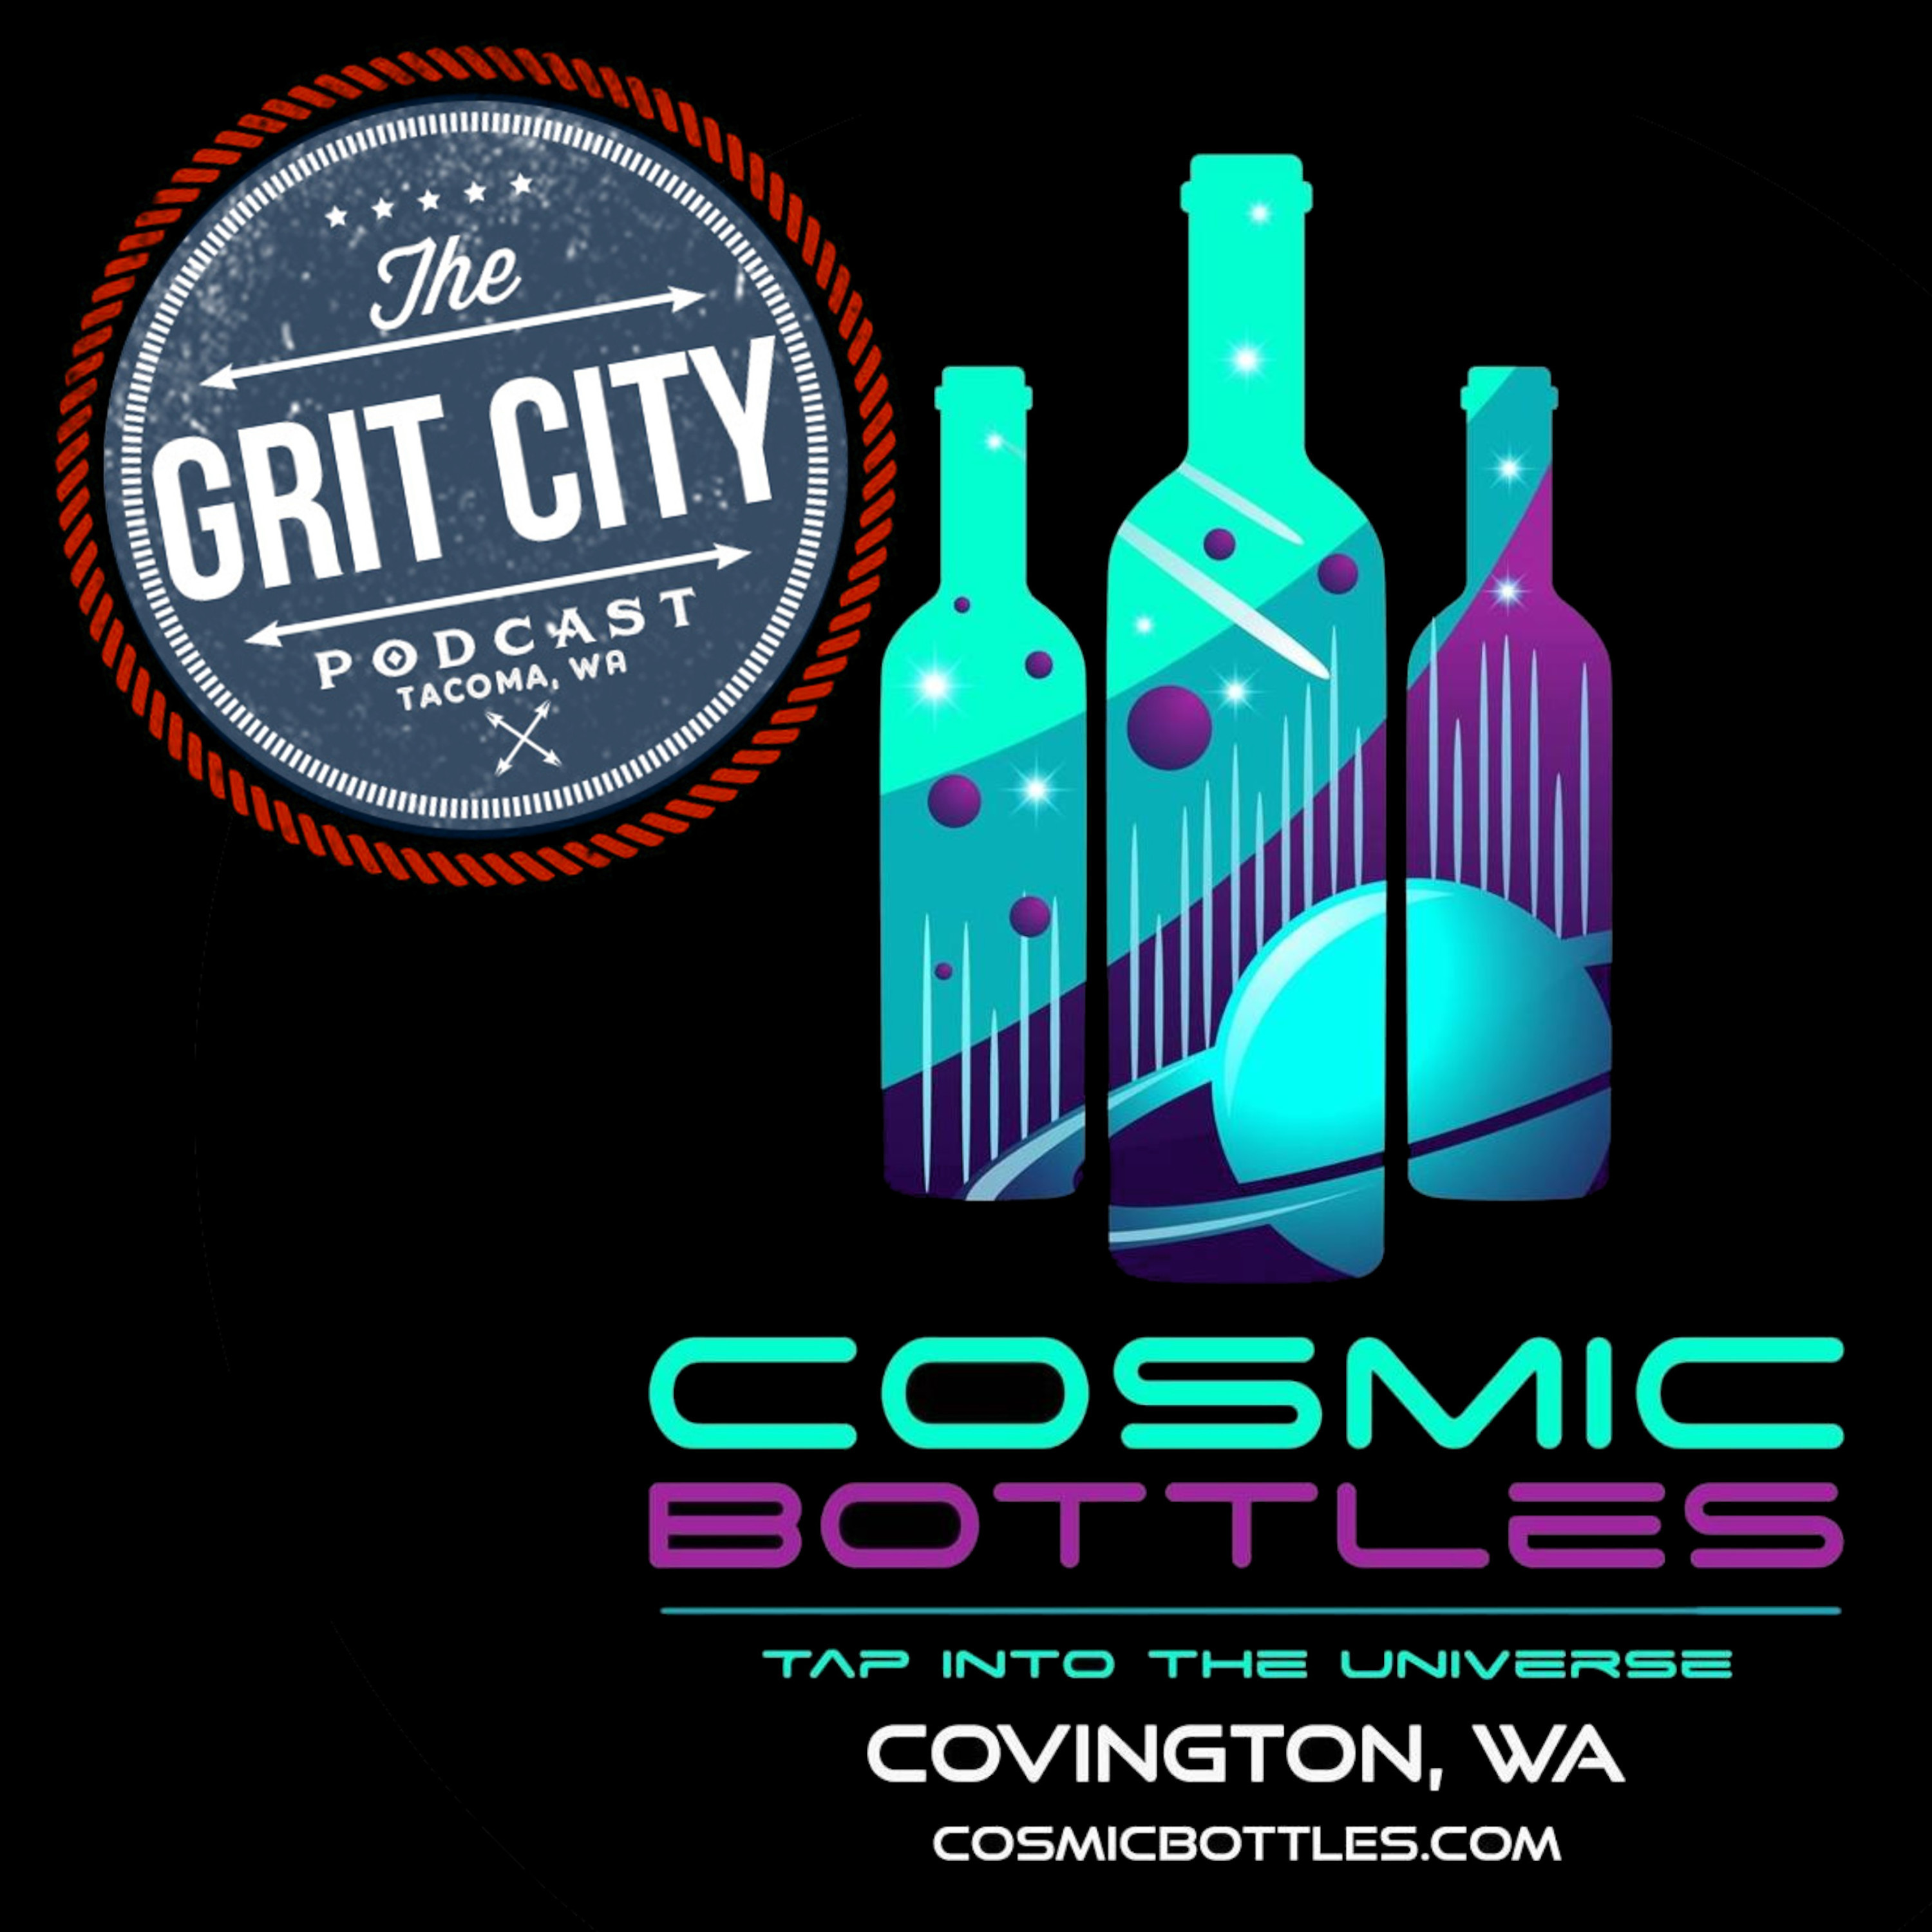 Cosmic Bottles